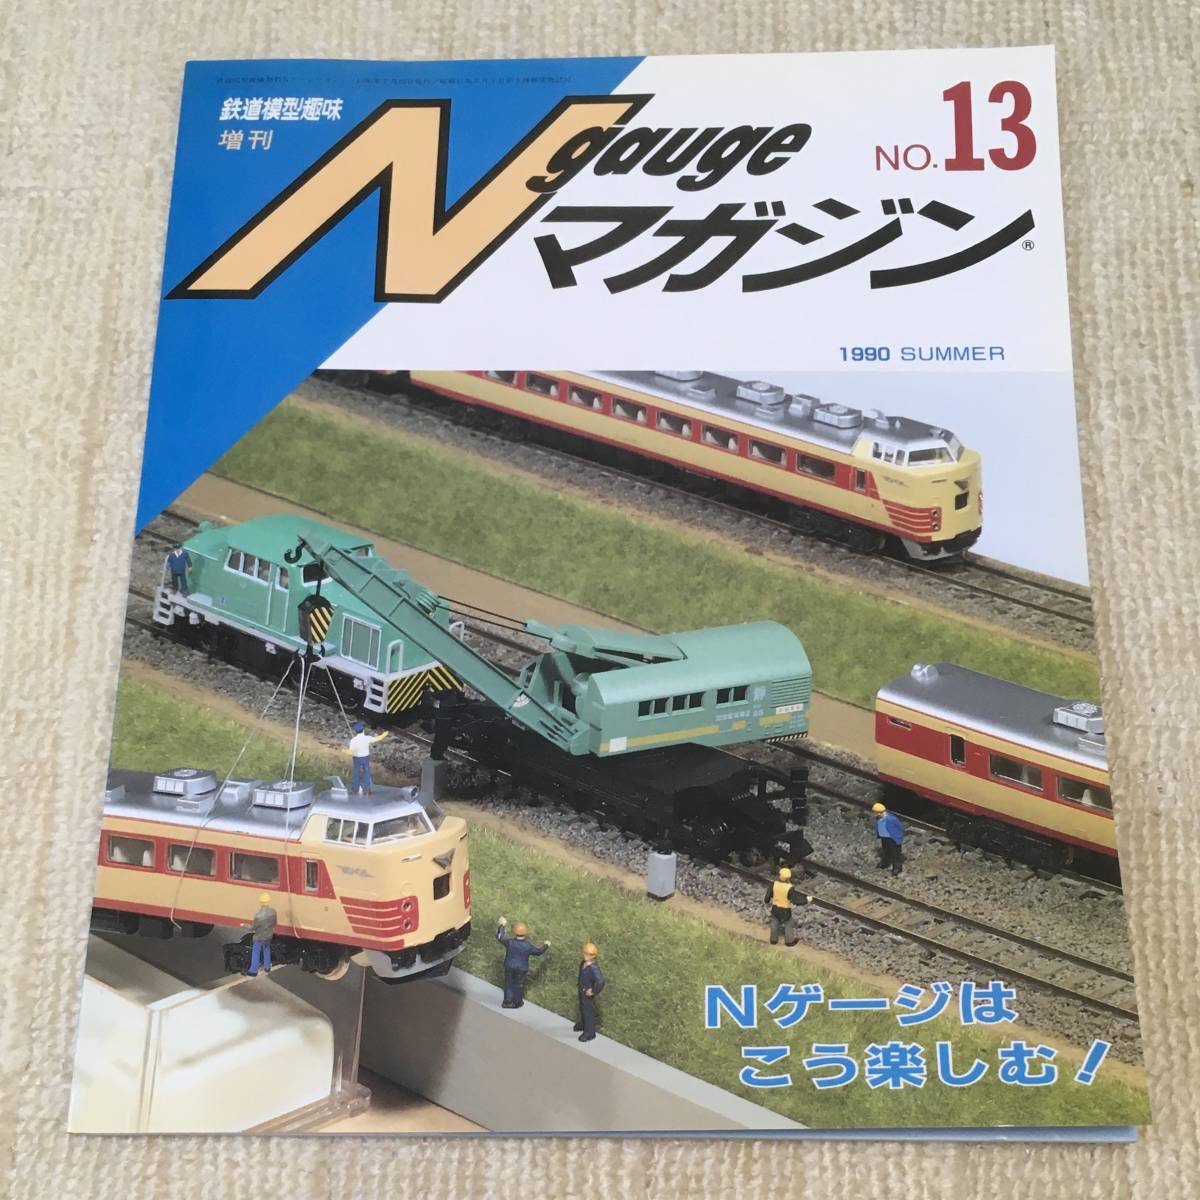 【模型】Nゲージマガジン No.13 1990 SUMMER 夏 鉄道模型趣味増刊 レイアウト 工作 改造 485系 205系 キット 車輌展示 ブック形ケース EF81_表紙に反りあり